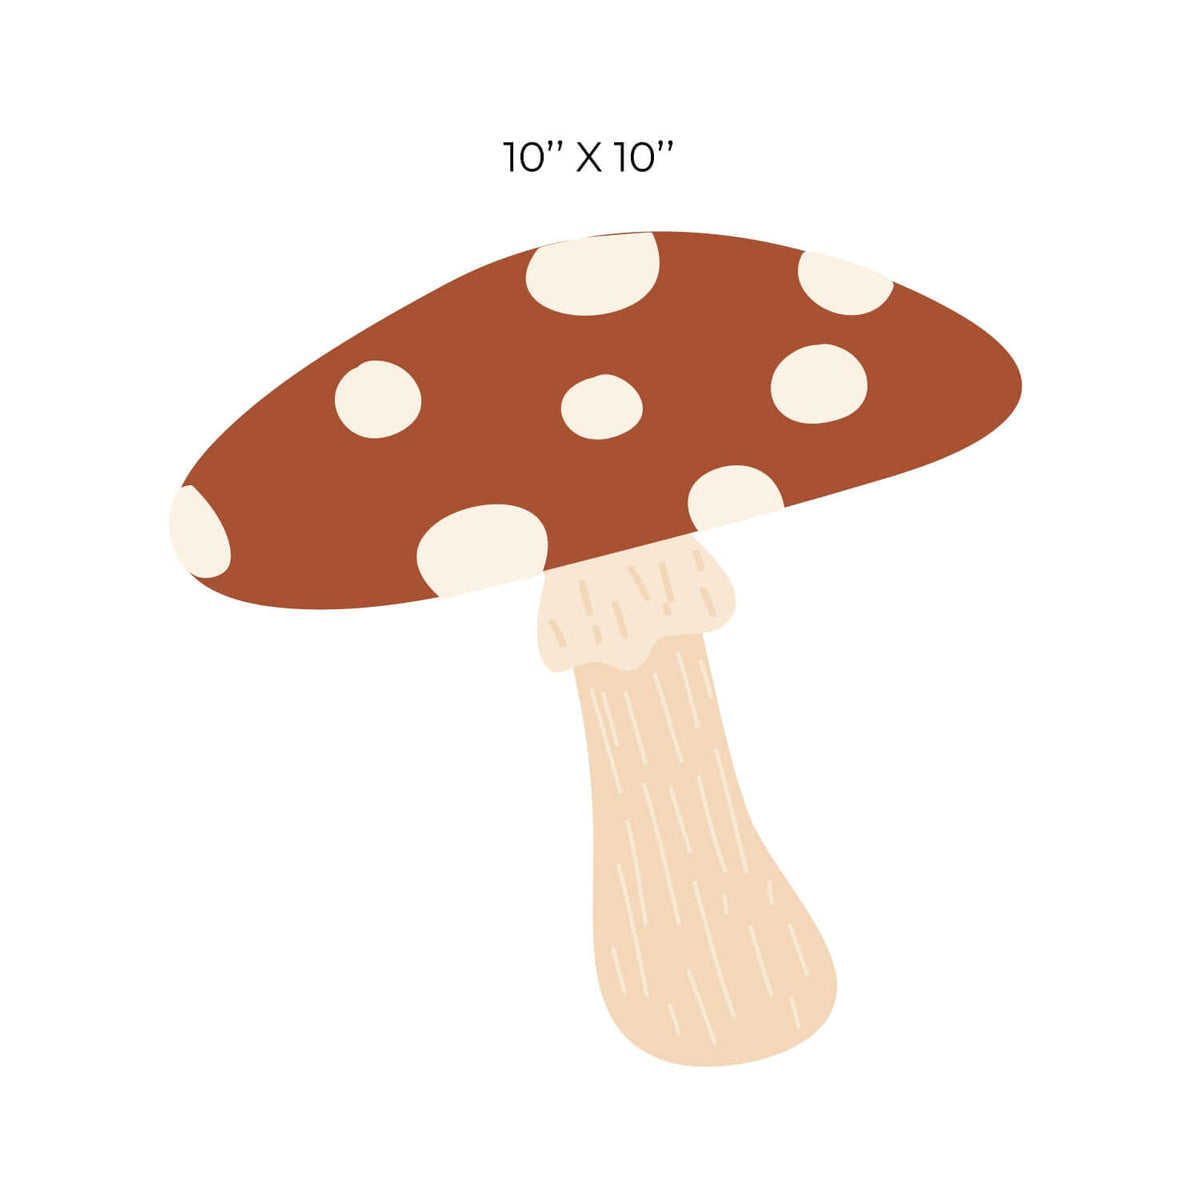 Sticker décoratif autocollant, monde imaginaire enfant avec maison  champignon et aniamux, 48 cm X 68 cm